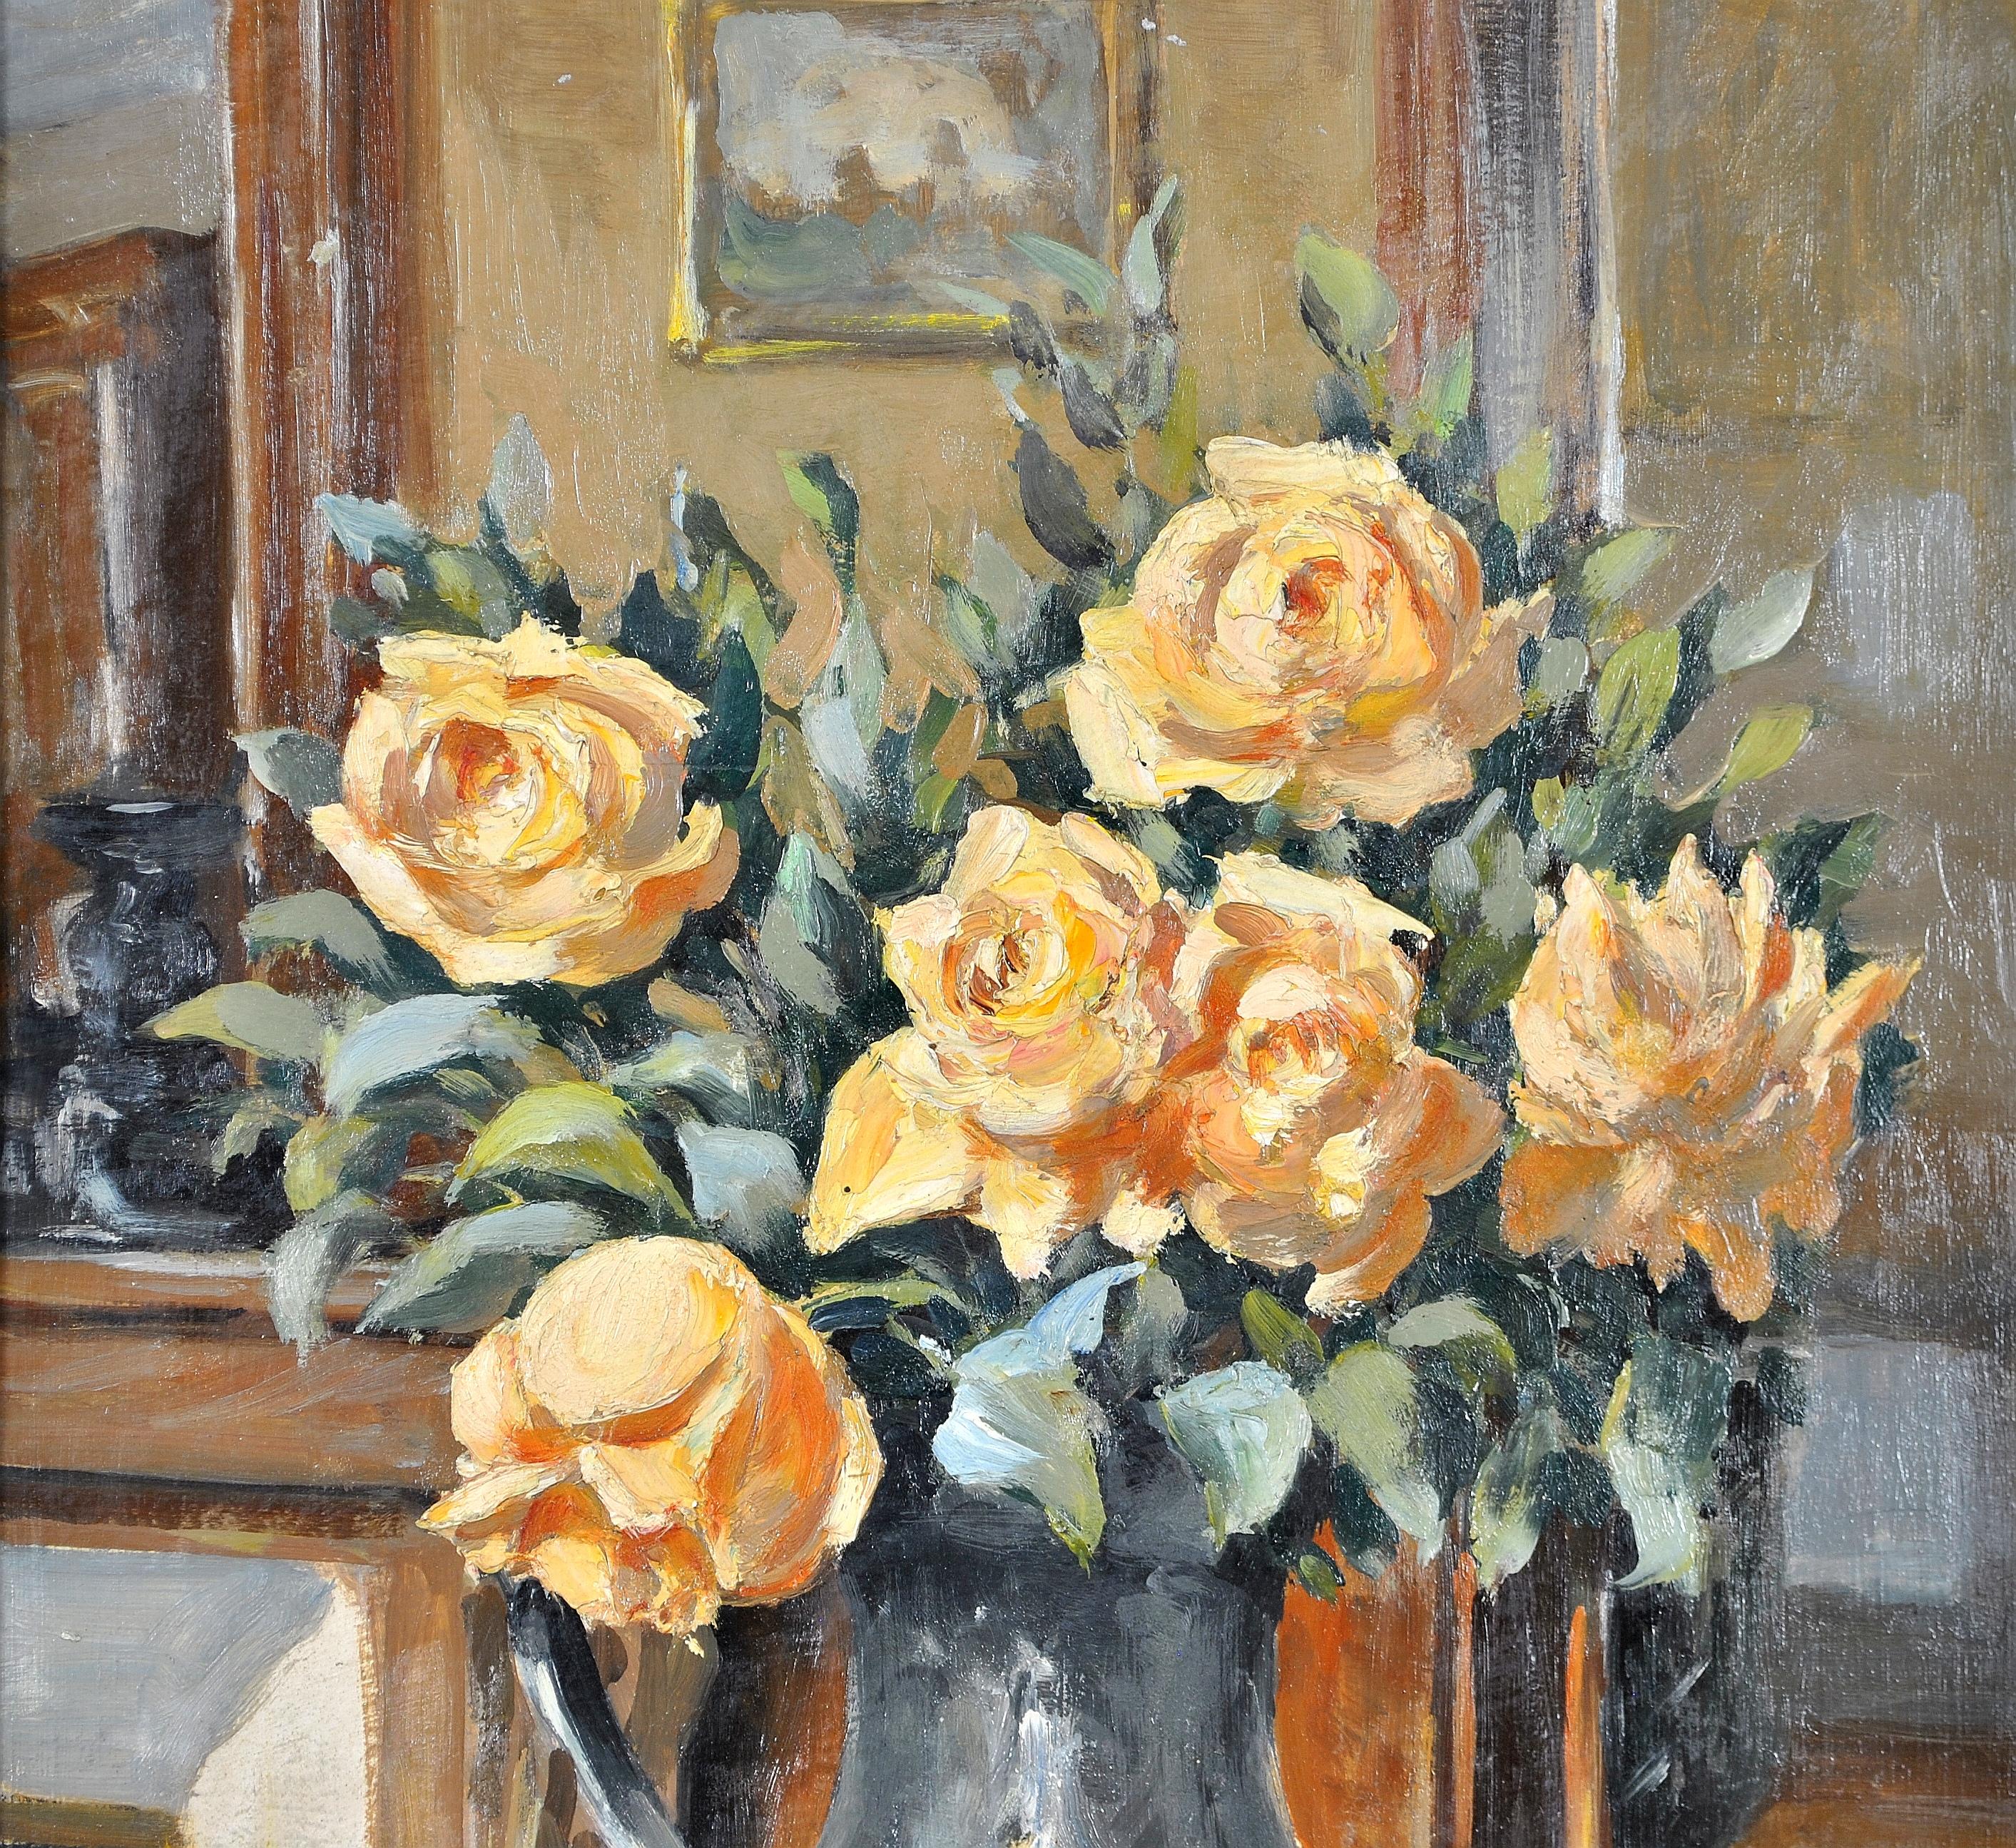 Magnifique nature morte d'intérieur à l'huile sur carton impressionniste française des années 1920, avec des roses jaunes dans une cruche. Un travail d'excellente qualité avec beaucoup de détails, y compris une peinture sur le mur et un miroir